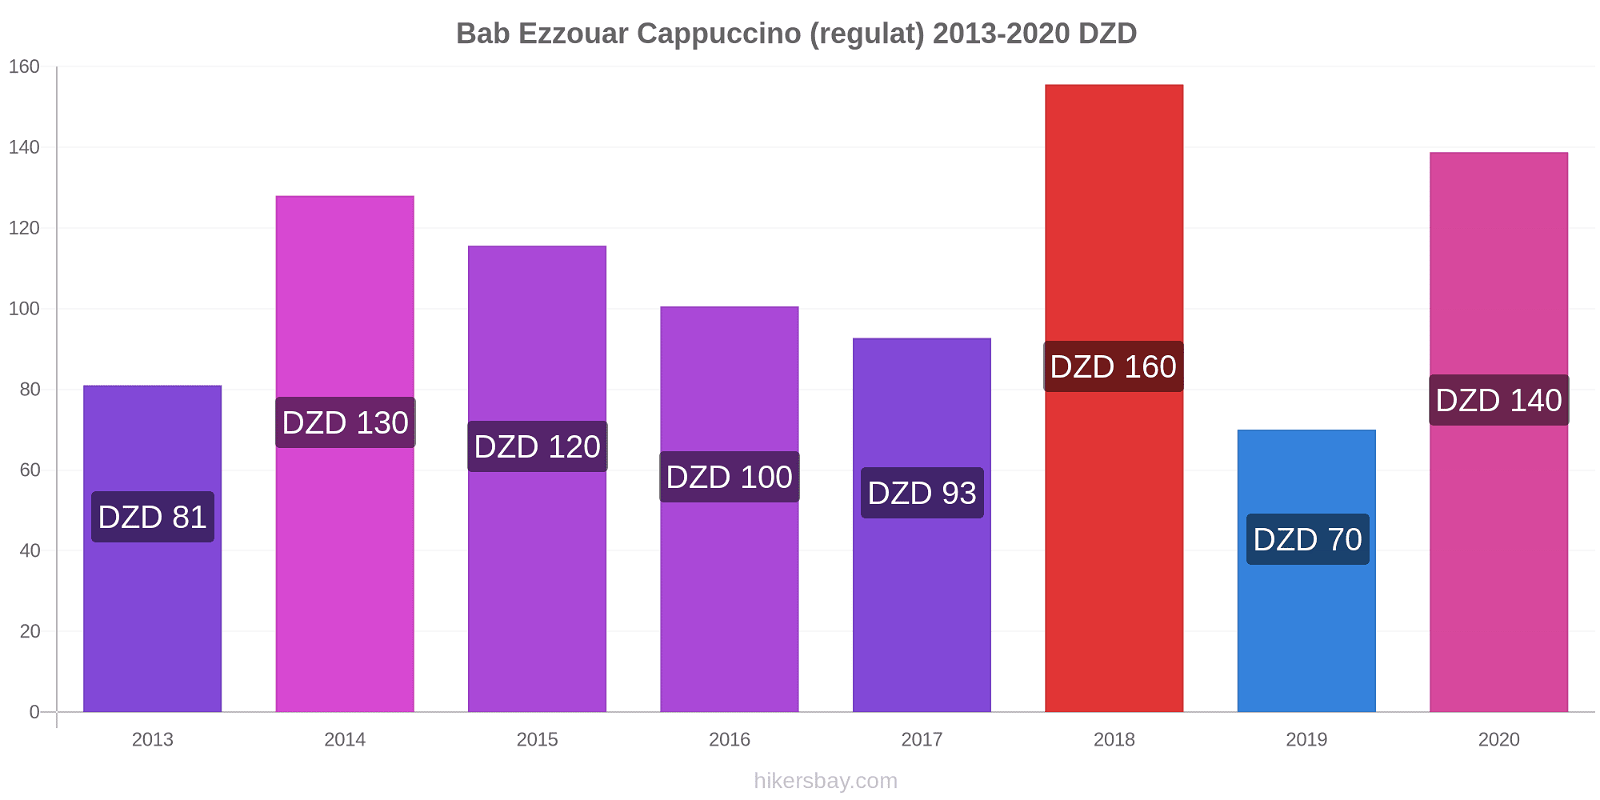 Bab Ezzouar modificări de preț Cappuccino (regulat) hikersbay.com